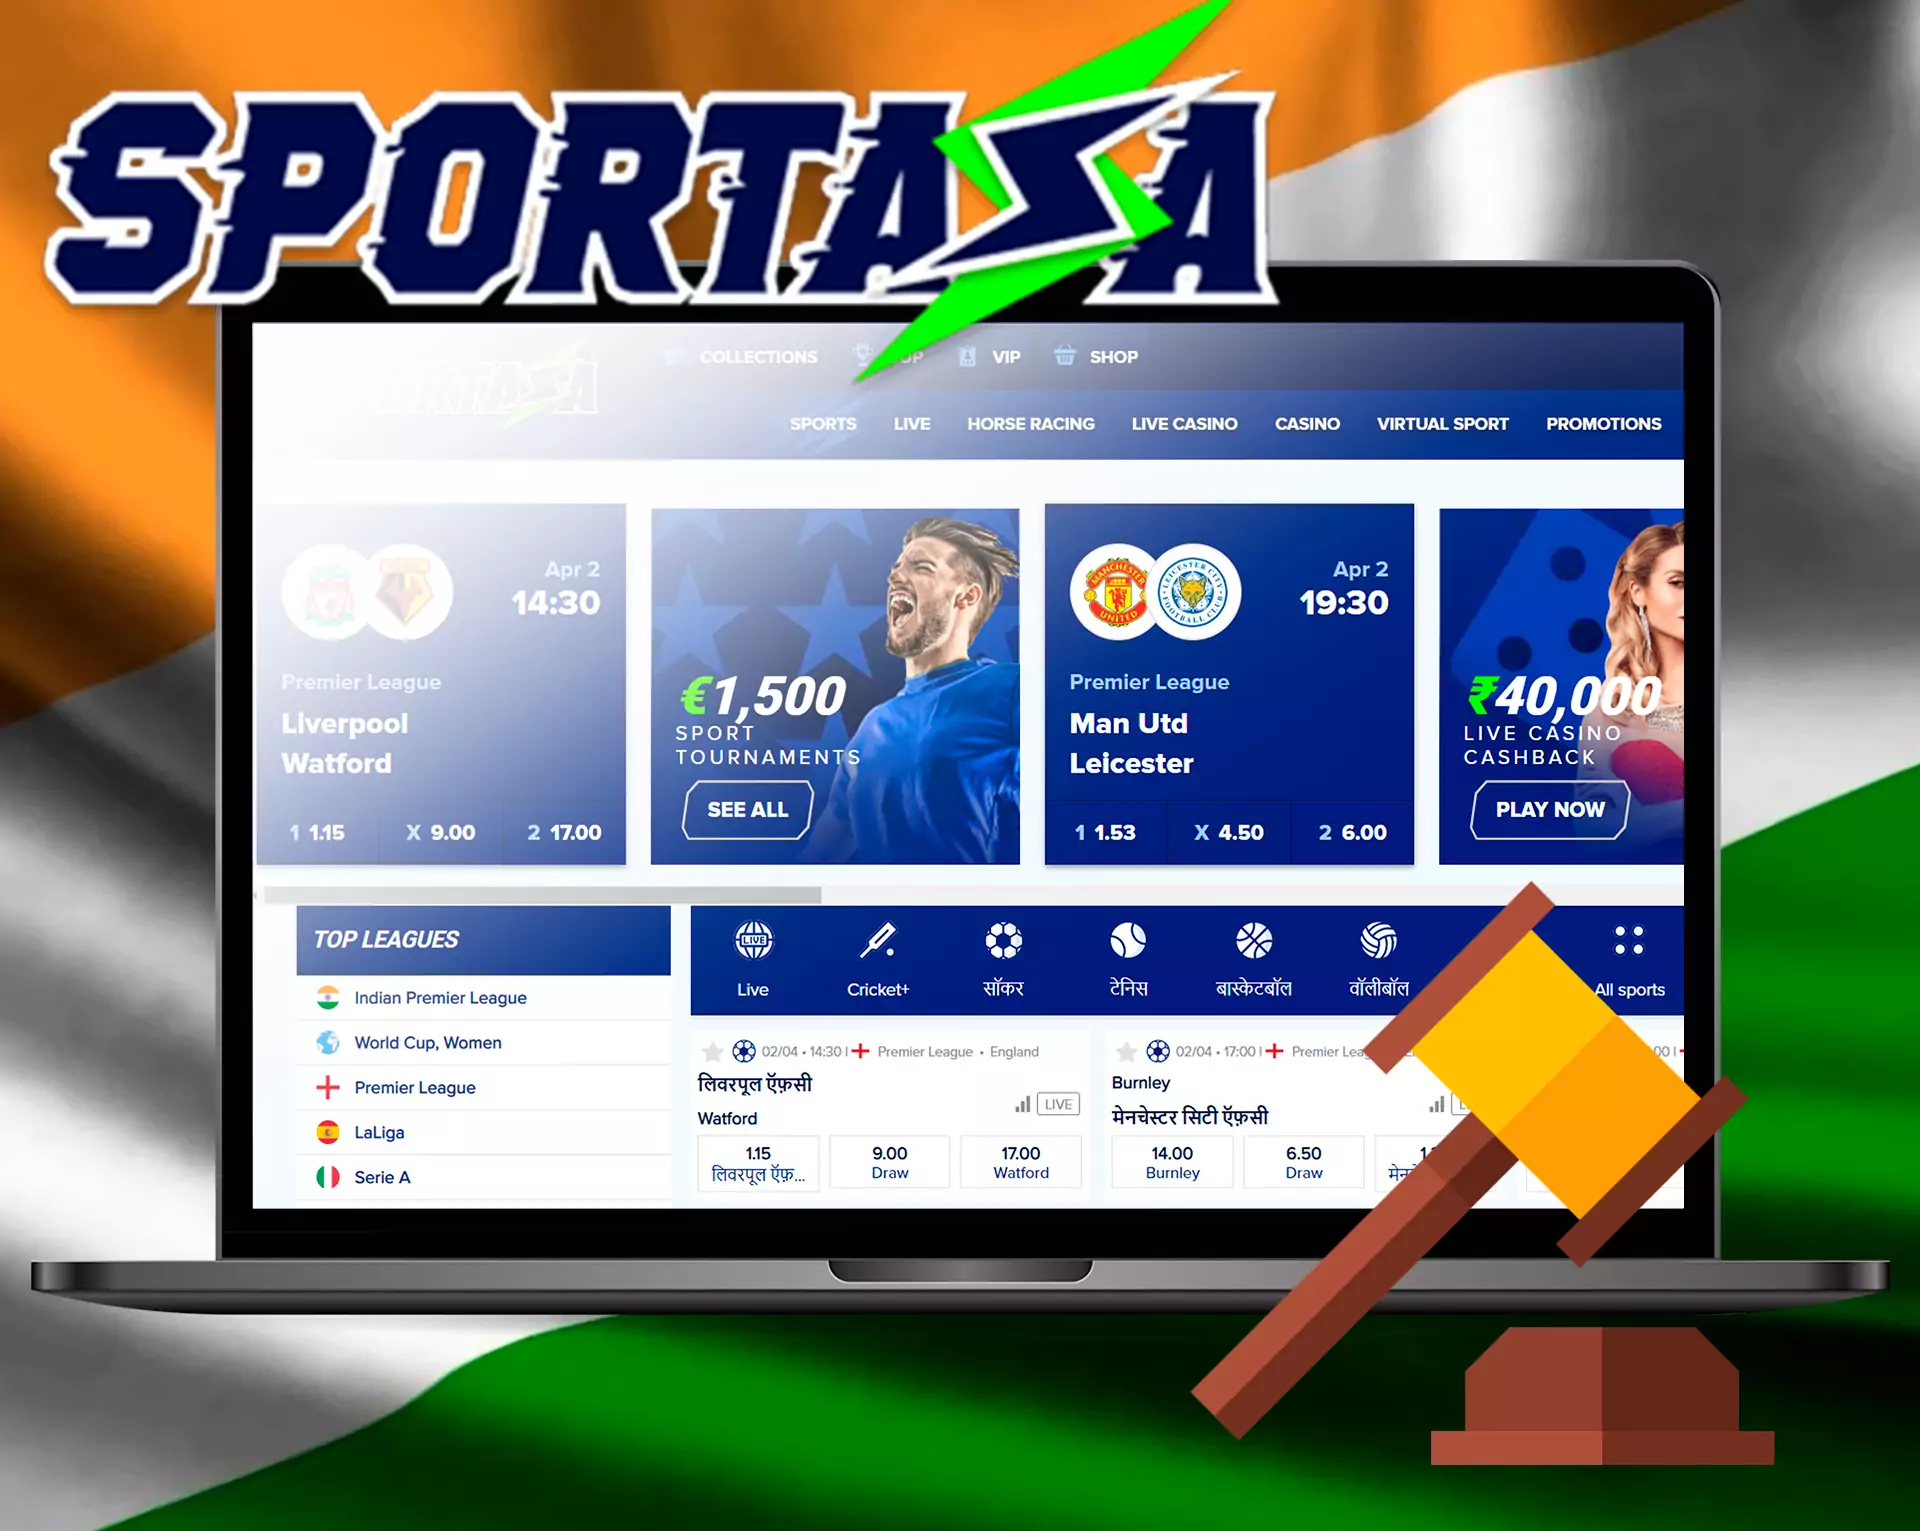 Sportaza कानूनी और सुरक्षित है भारत में।